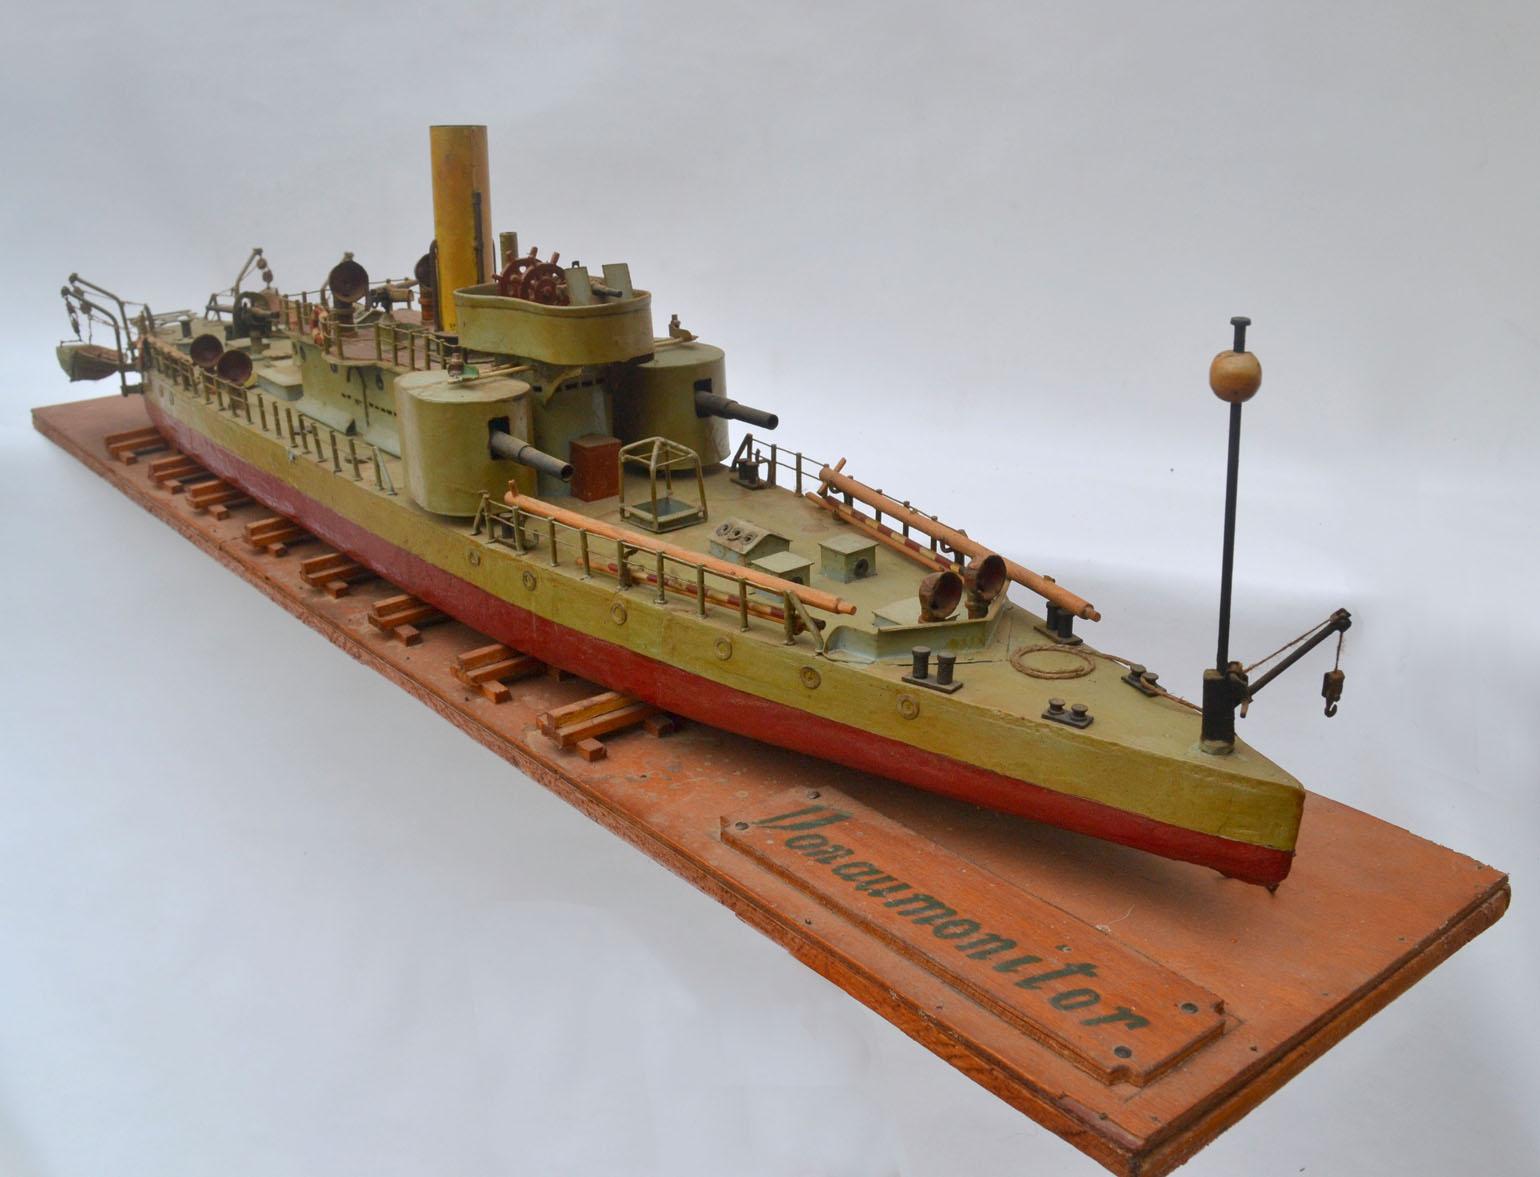 Un beau modèle de chantier naval d'un des premiers torpilleurs. Ce modèle de bateau de guerre à torpilles surveillait la rivière Donau vers la fin du 19e siècle et le début du 20e siècle. Il a été fabriqué à la main au début ou au milieu du 20e